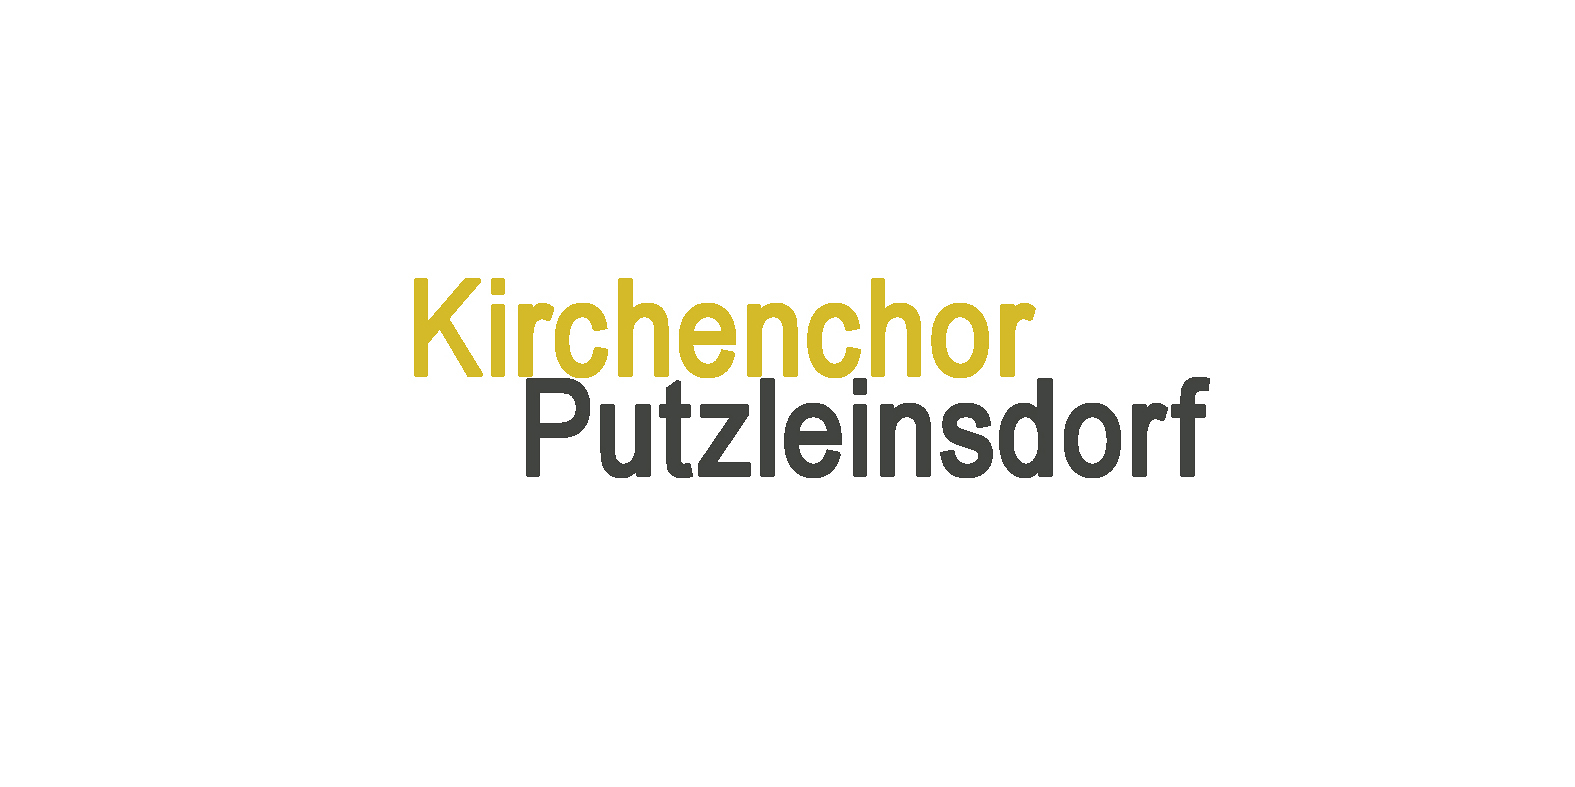 Kirchenchor Putzleinsdorf